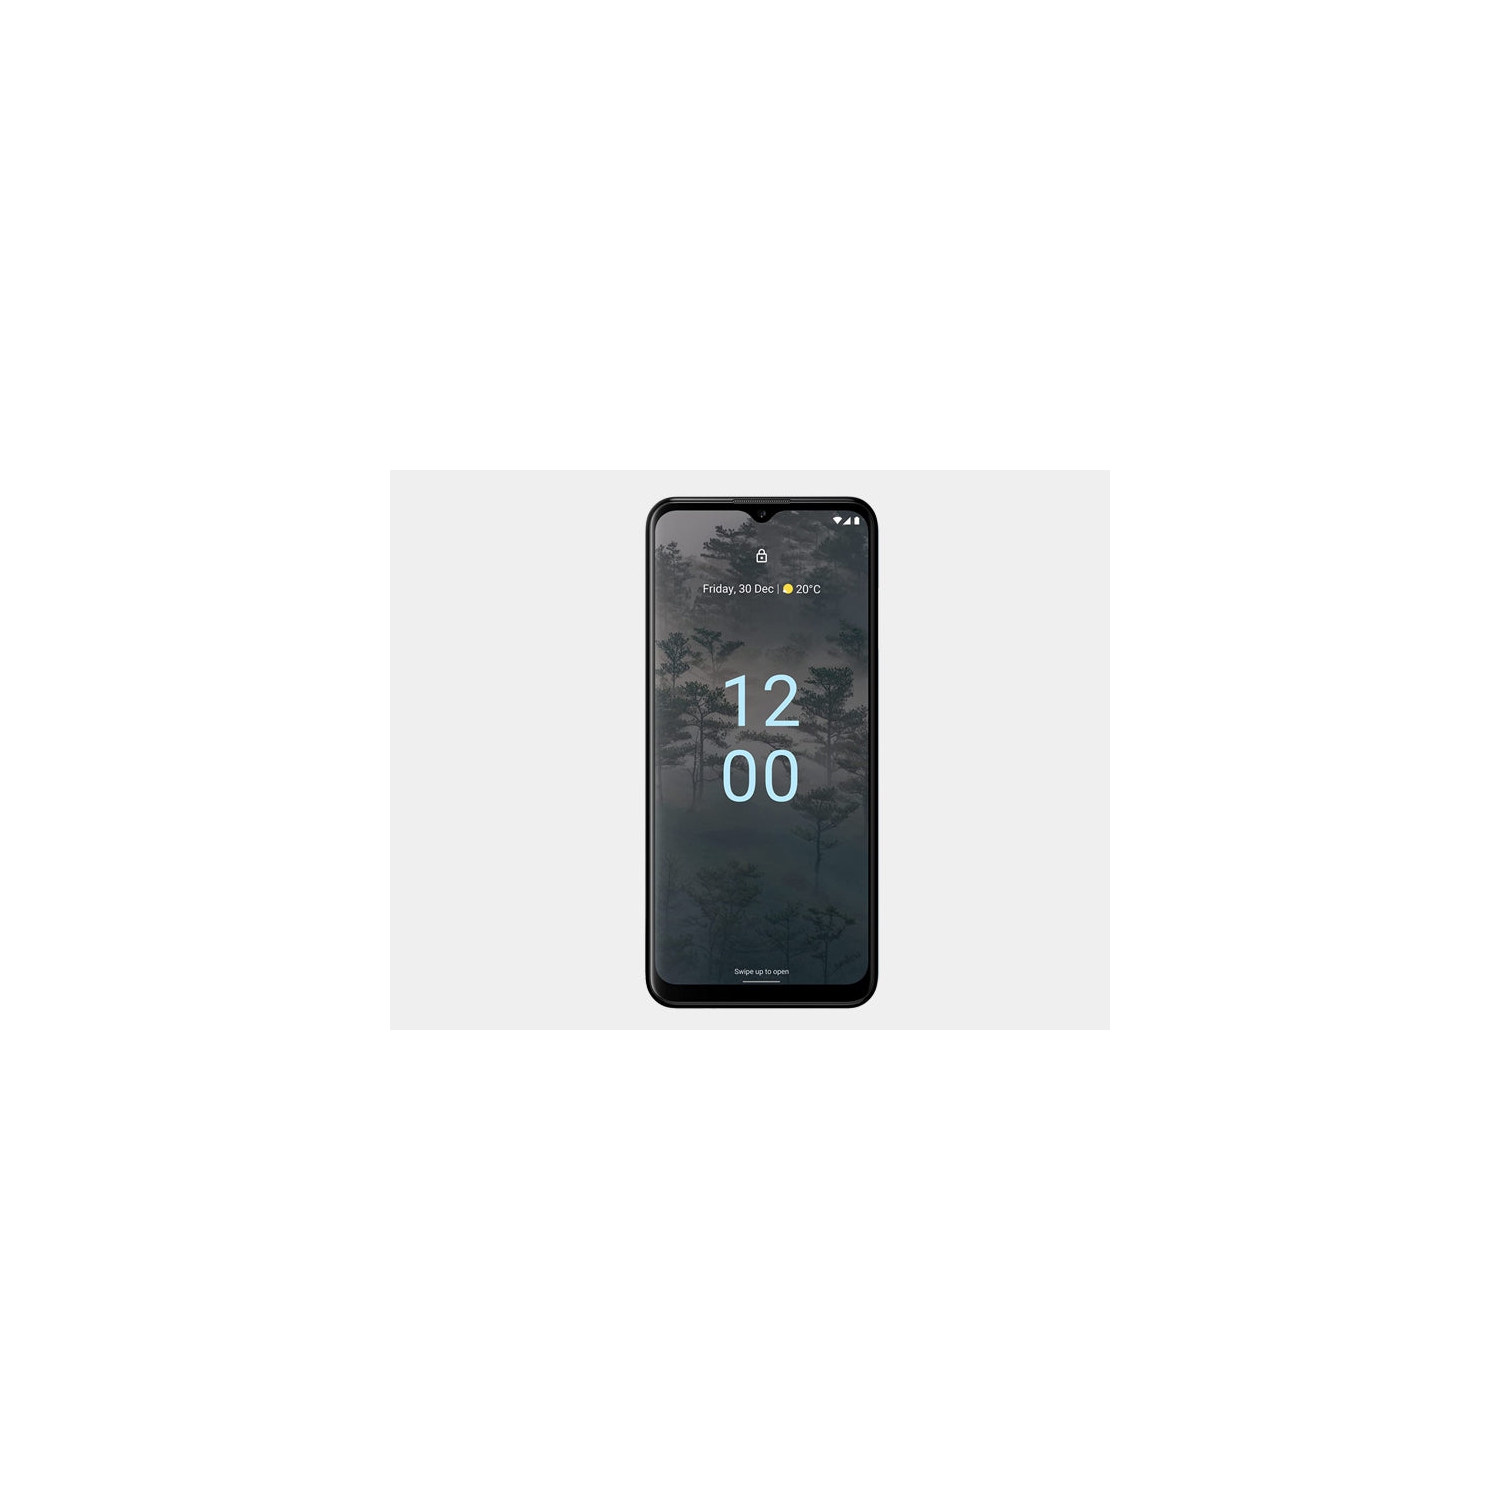 Nokia G60 5G Dual-SIM 128GB ROM + 6GB RAM GSM Unlocked - Ice Gray